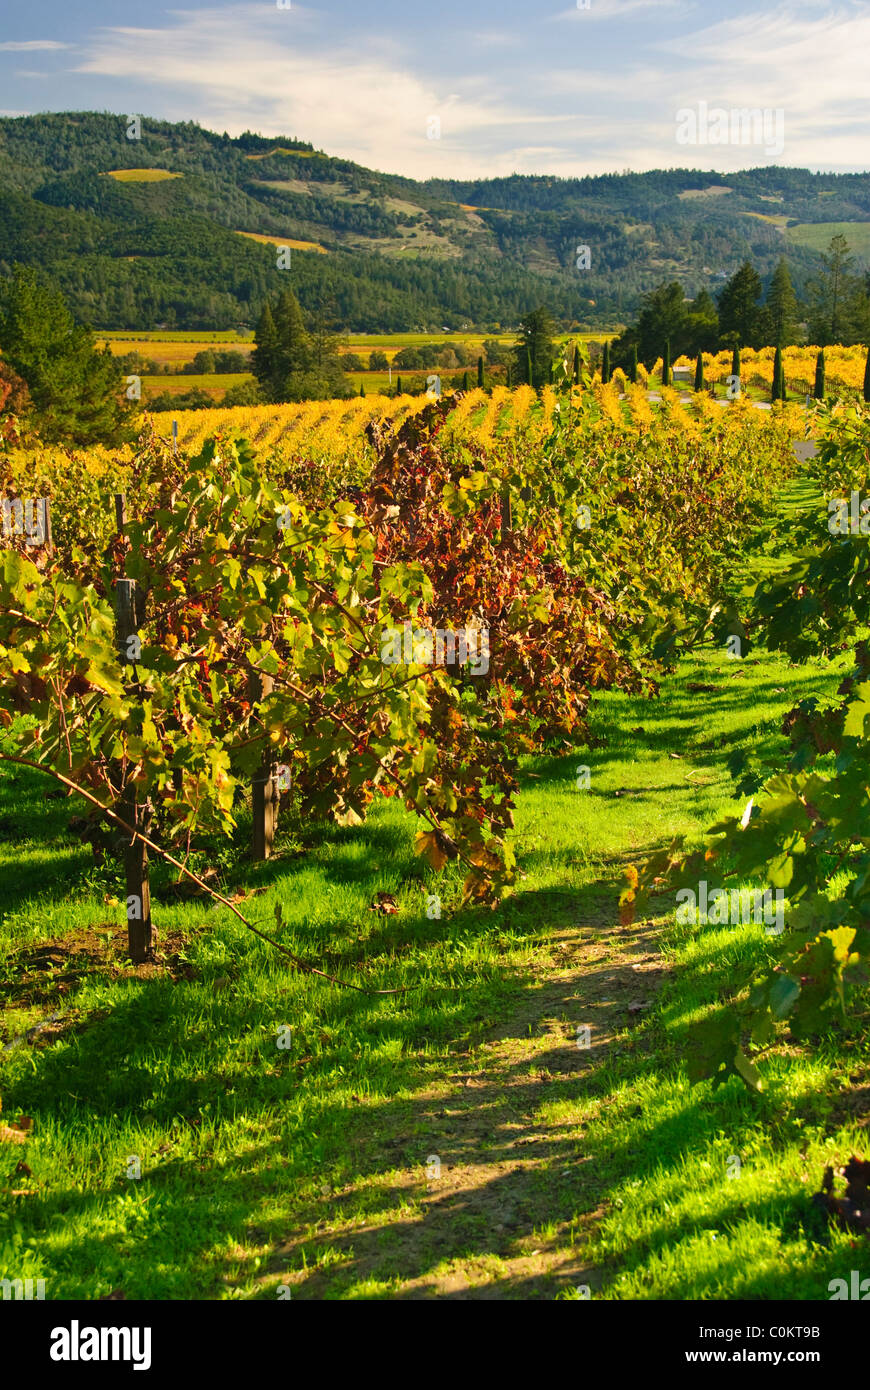 Vineyard near Calistoga, Napa Valley, California, USA Stock Photo